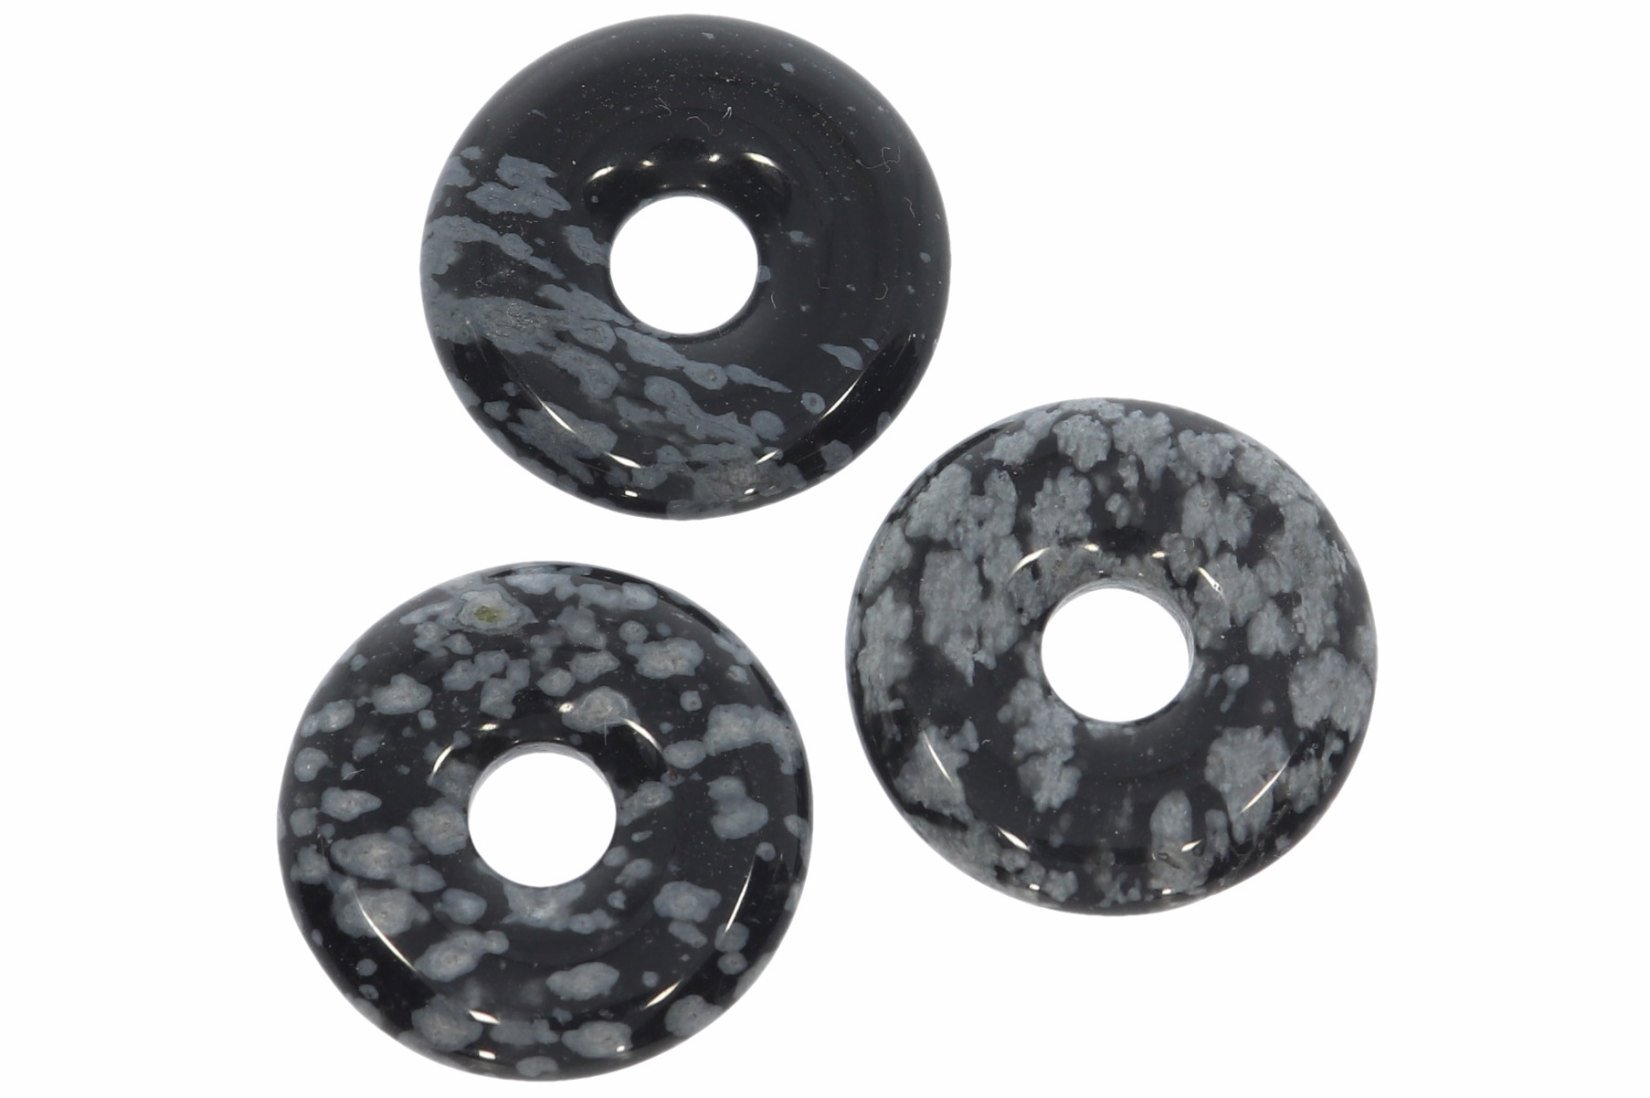 Schneeflocken Obsidian Donut Schmuck Anhänger 20mm & Donut Halter Silber HS1599